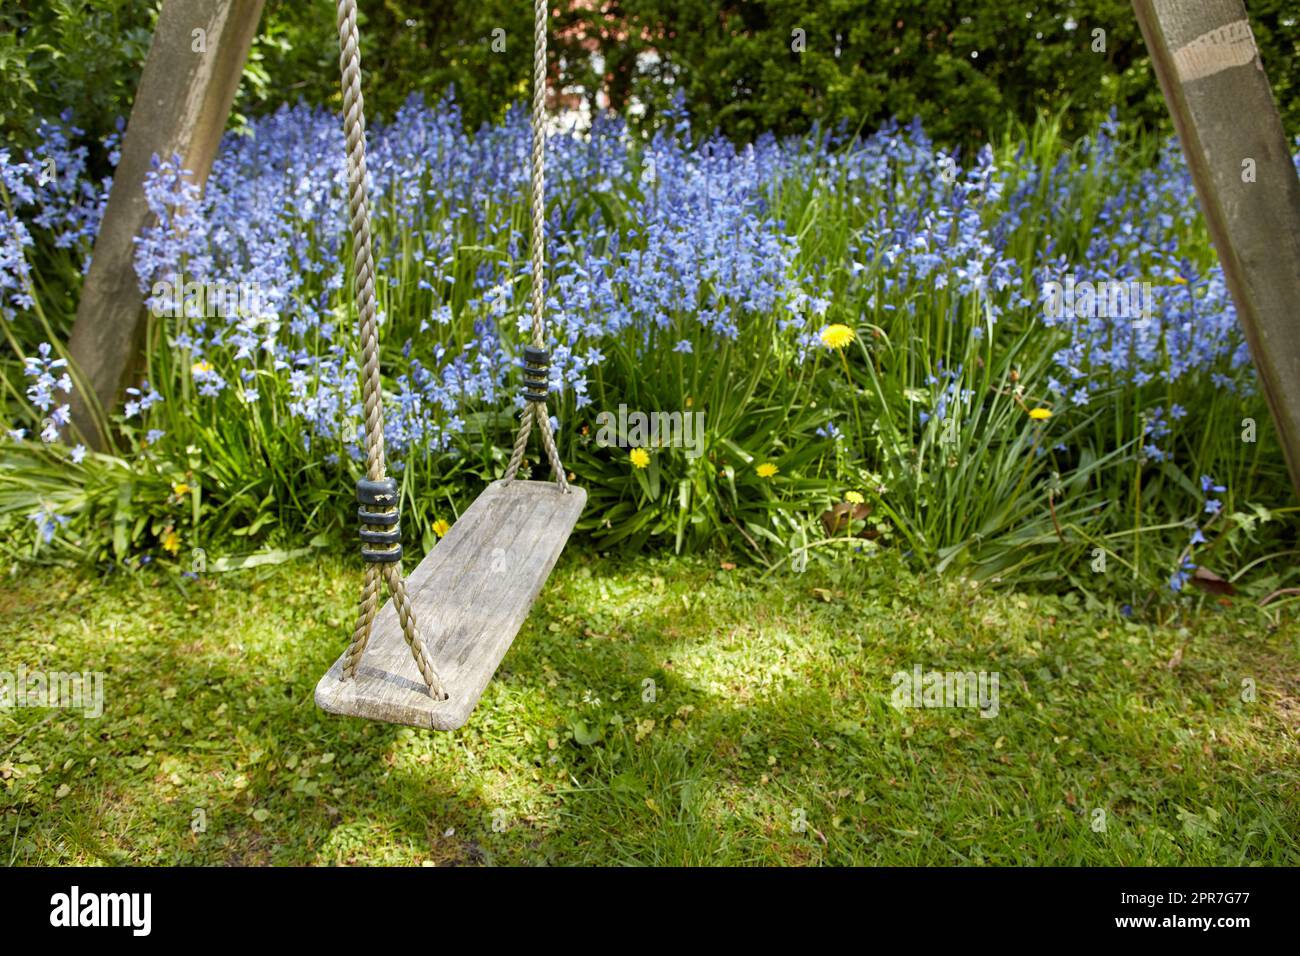 Alte Holzschaukel in einem Garten mit blauen Blumen und Moos in einem üppigen Garten. Friedliche Szene eines vergessenen Spielplatzes mit lebhaften wilden Blauen Glocken und überwuchertem Rasen im Frühling mit Kopierplatz Stockfoto